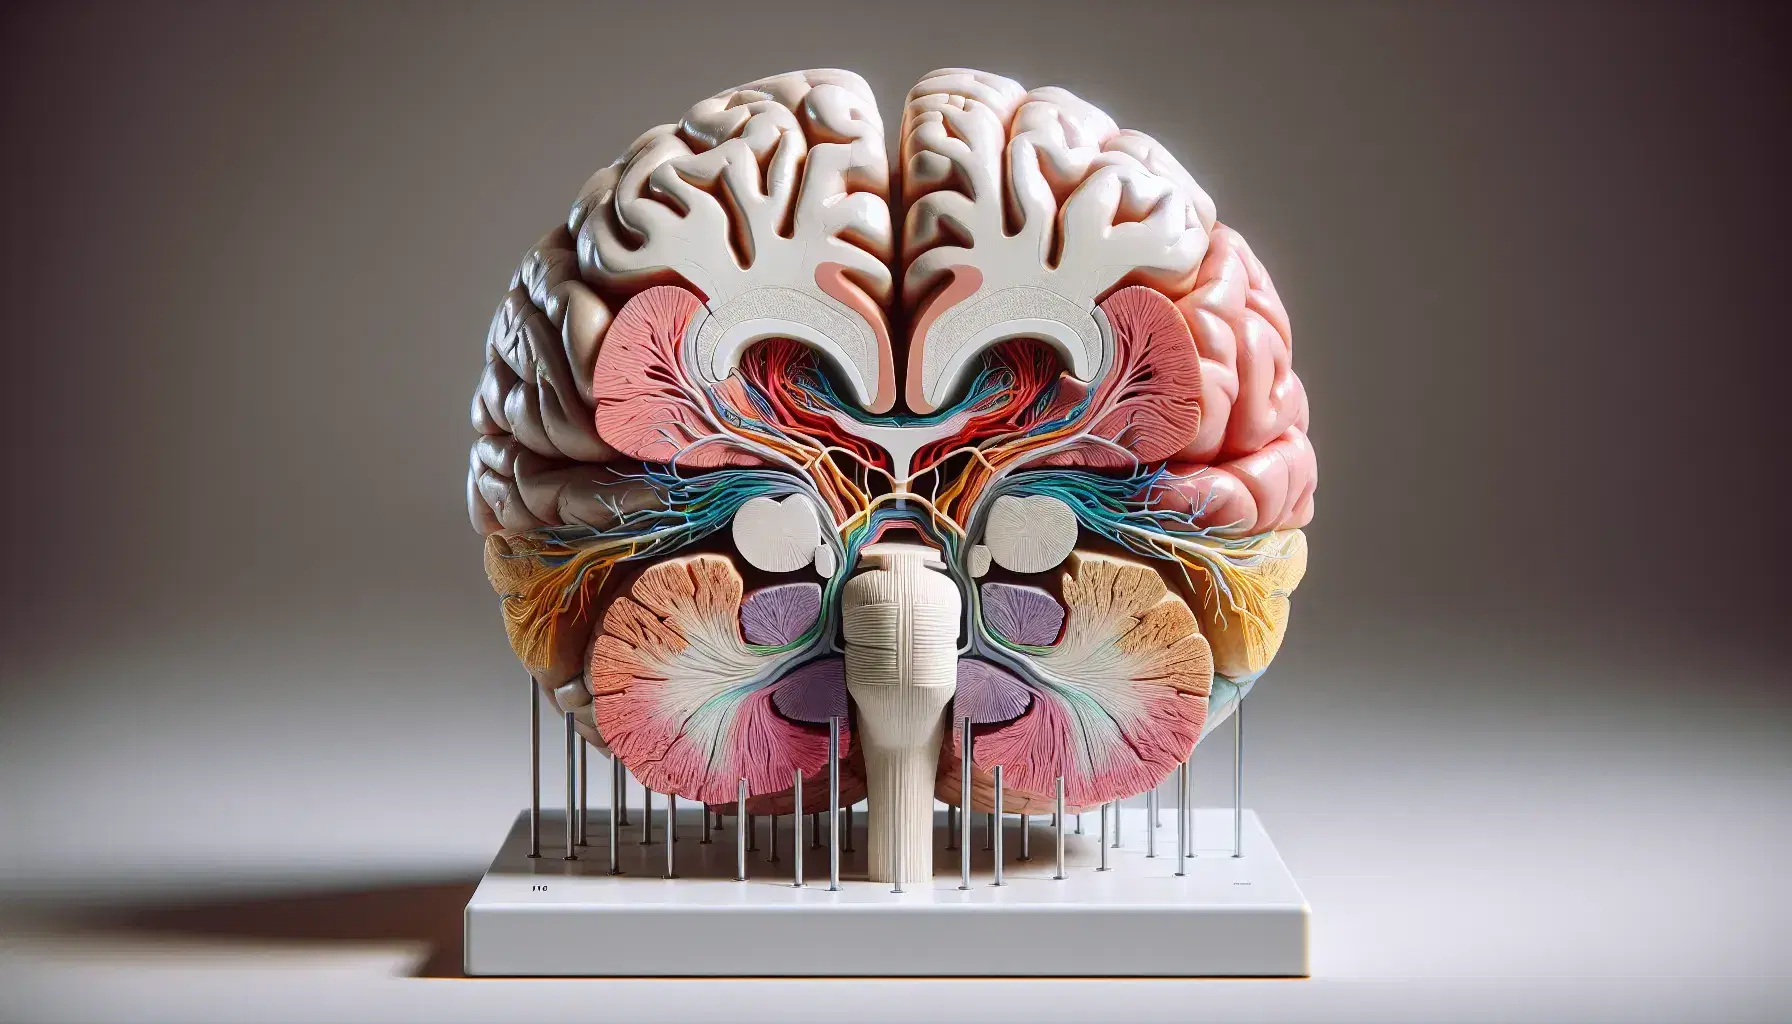 Modelo anatómico detallado del cerebro humano con sección transversal y nervios craneales visibles en base blanca, destacando las distintas áreas y tejidos cerebrales.